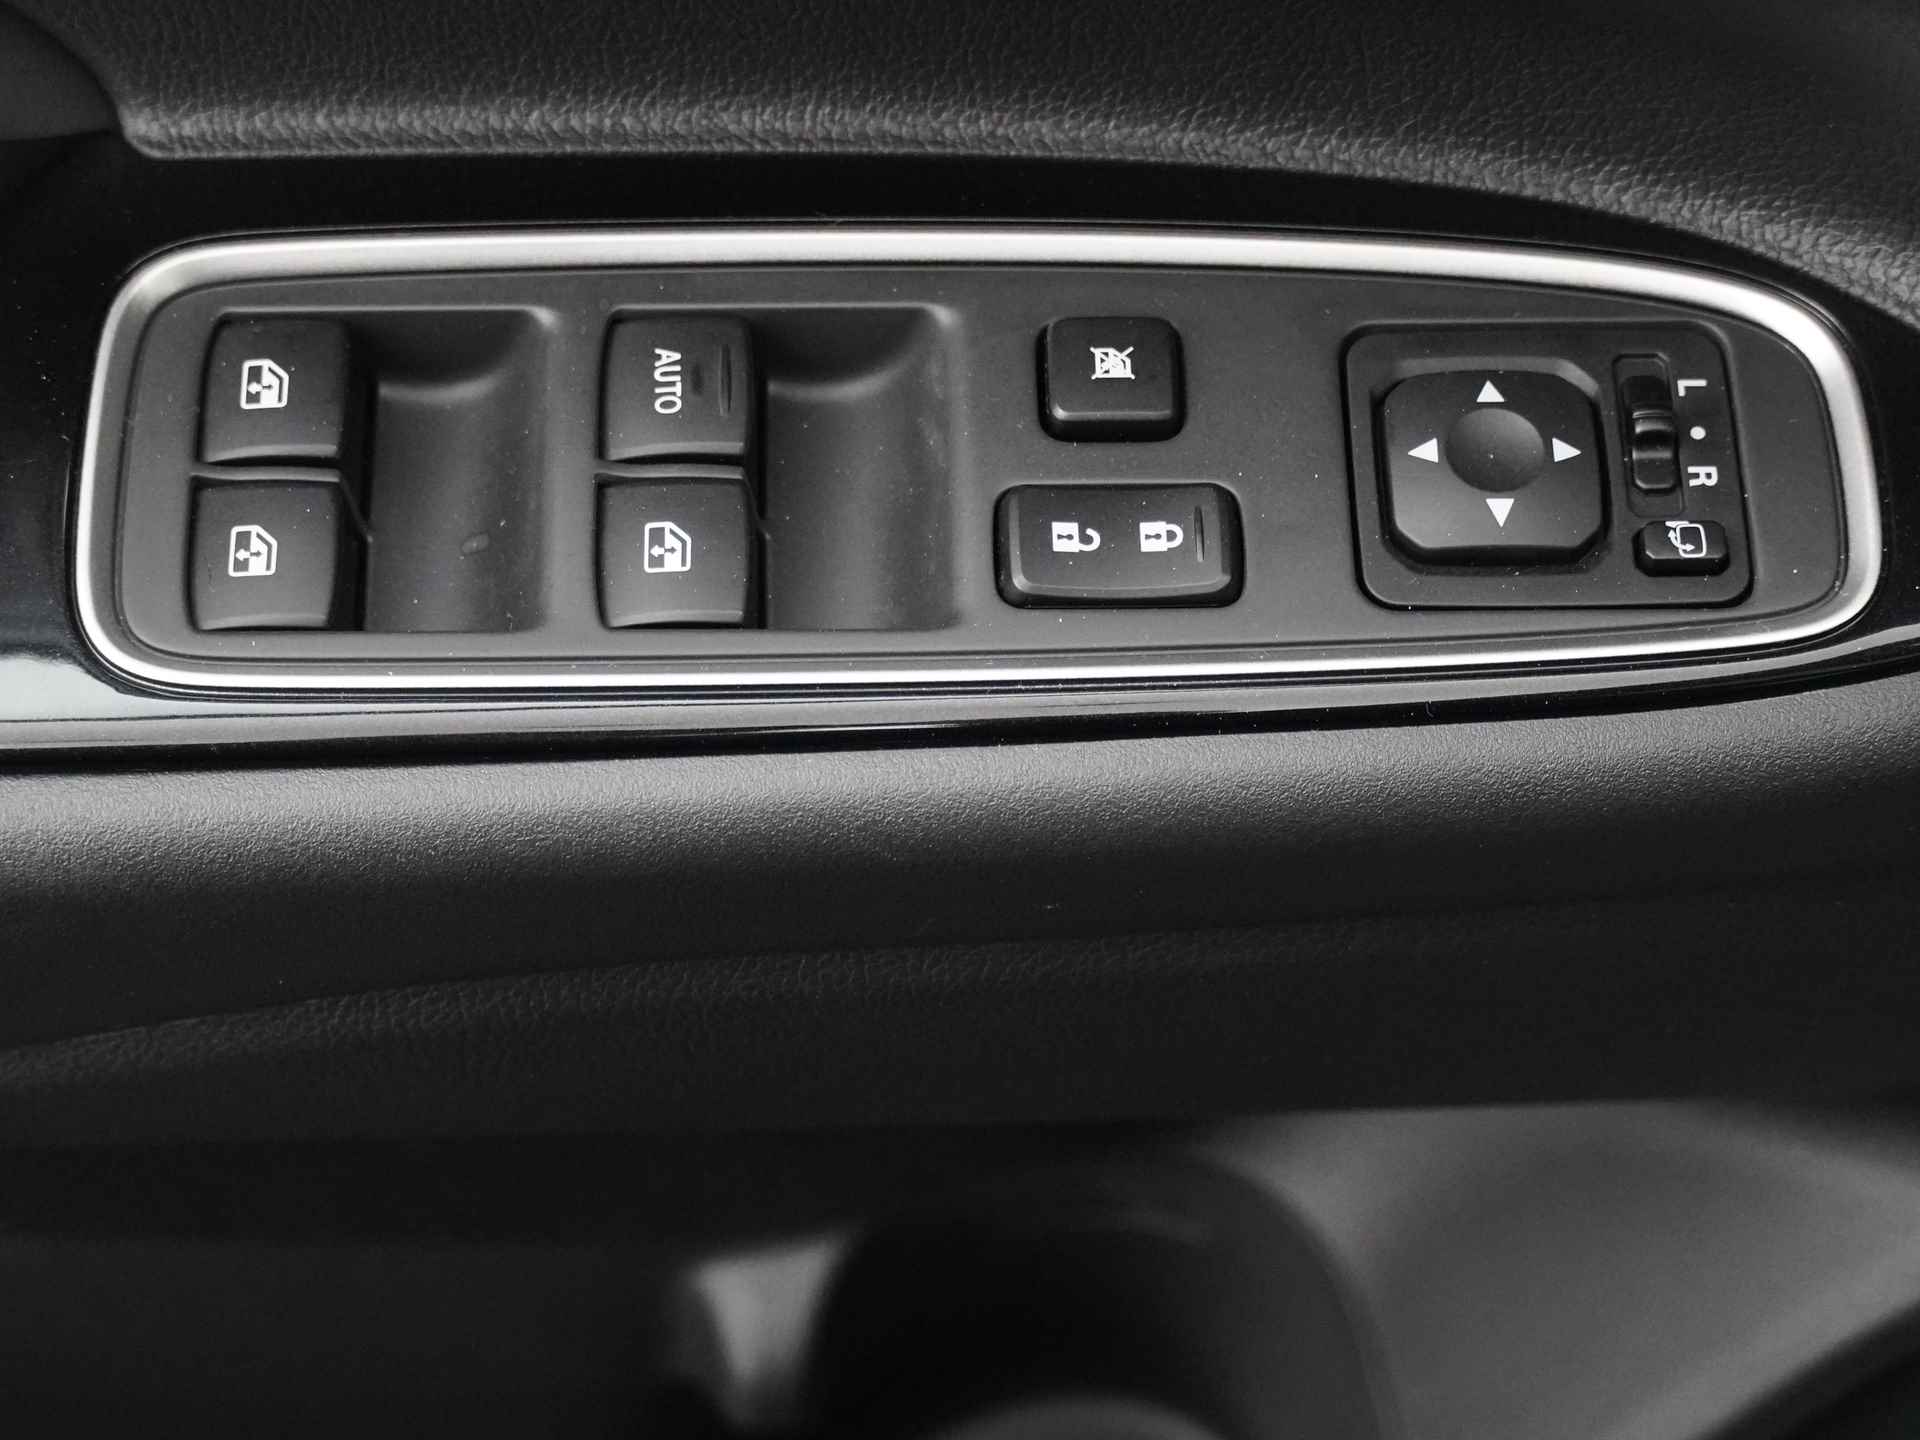 Mitsubishi Outlander 2.0 Instyle+ 4WD - Schuifkanteldak - Lederen bekleding - Voorraam verwarming - Apple CarPlay / Android Auto - Elektrische achterklep - 12 Maanden bovag garantie - 22/48